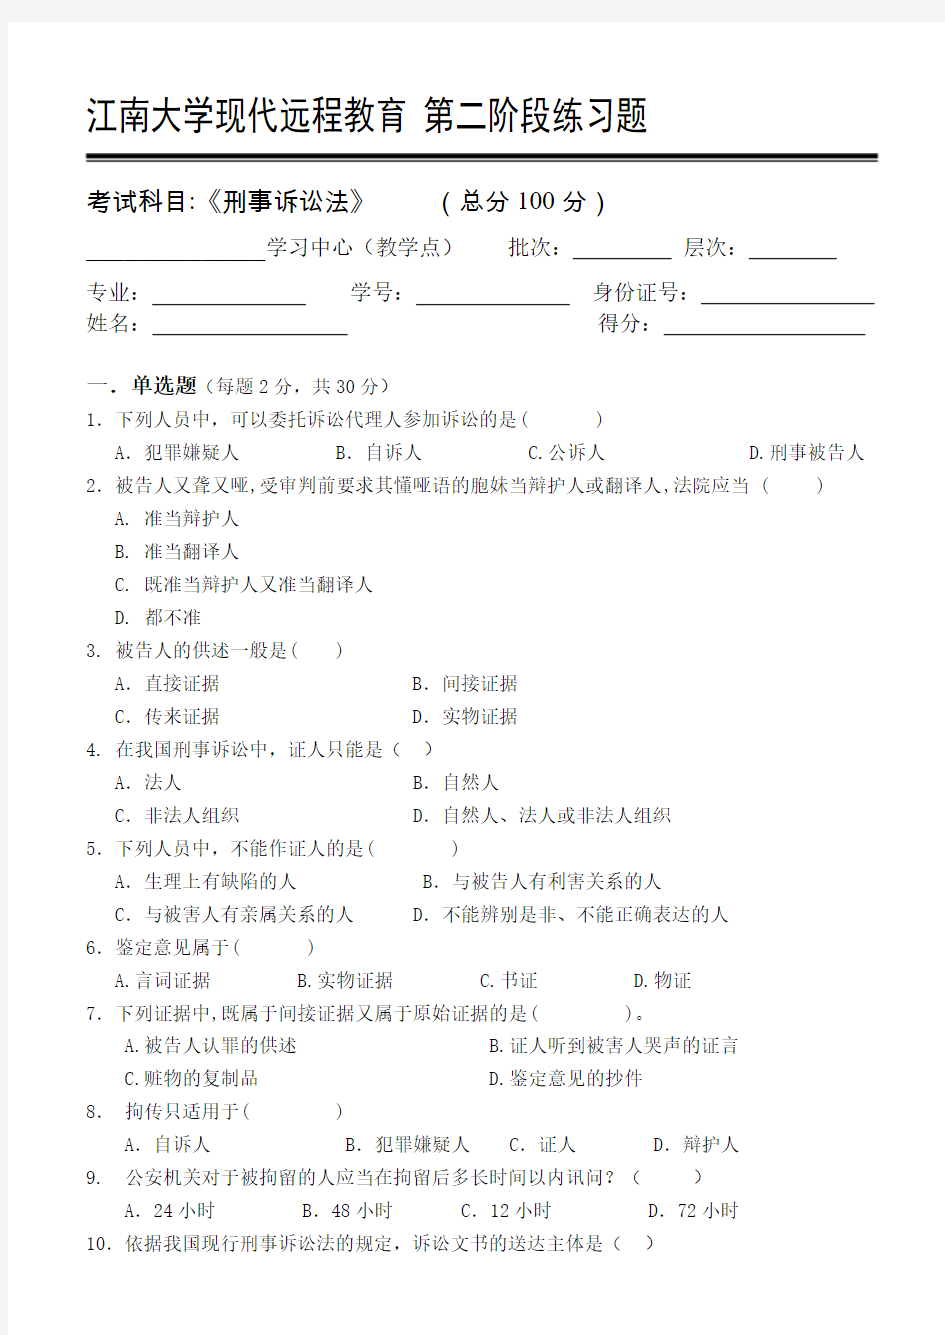 刑事诉讼法第2阶段练习题江南大学考试题库答案,答案在最后一页